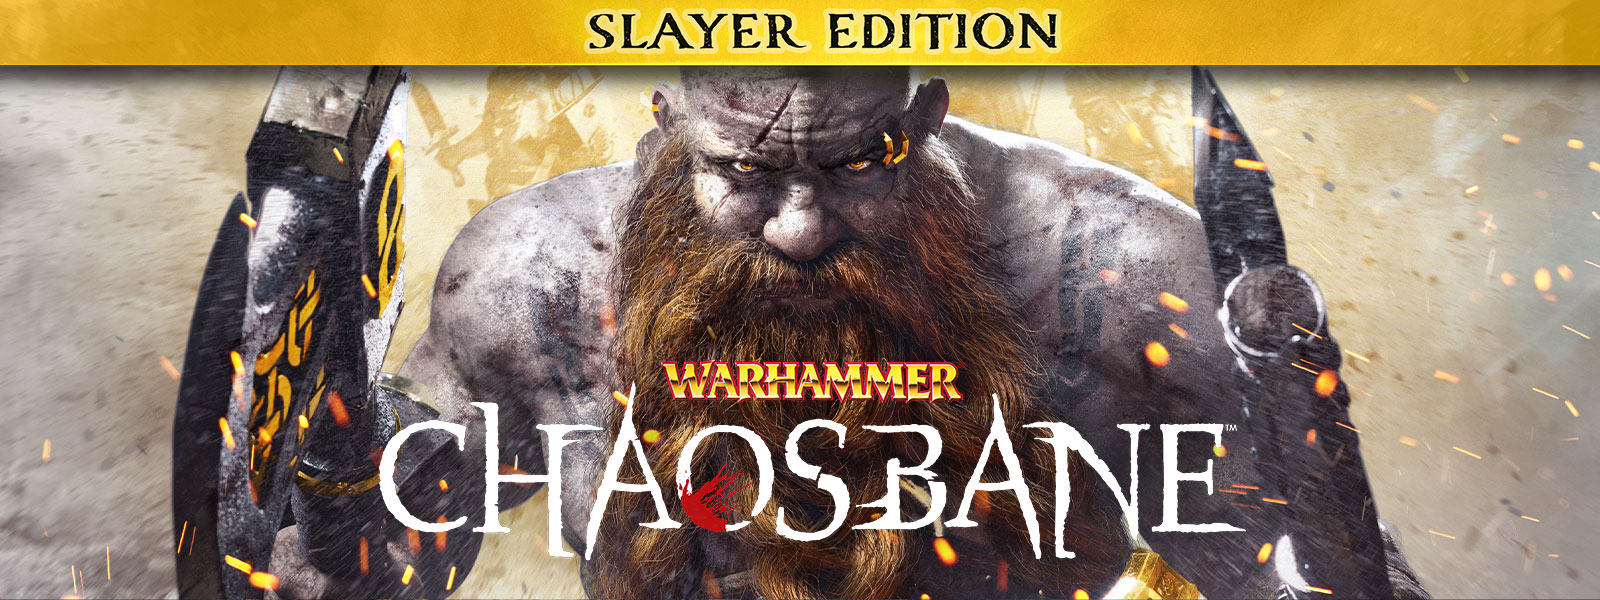 Warhammer: Chaosbane, Slayer Edition, Een bebaarde man loopt door vonken van vuur, met een bijl in elke hand.